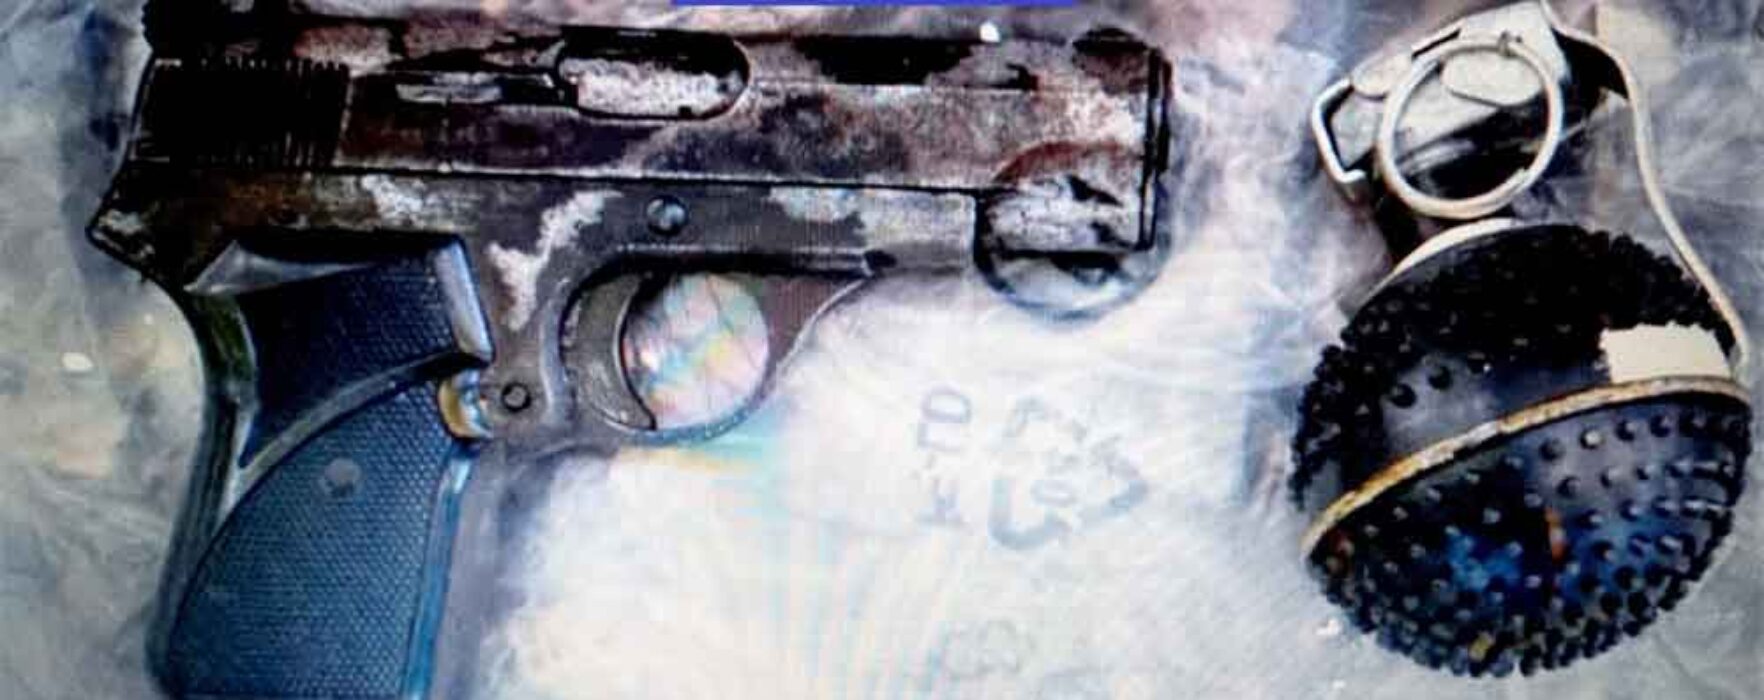 Dâmboviţa: Reţinut după ce a îngropat în grădină un pistol şi o grenadă cu care un bărbat se postase pe facebook